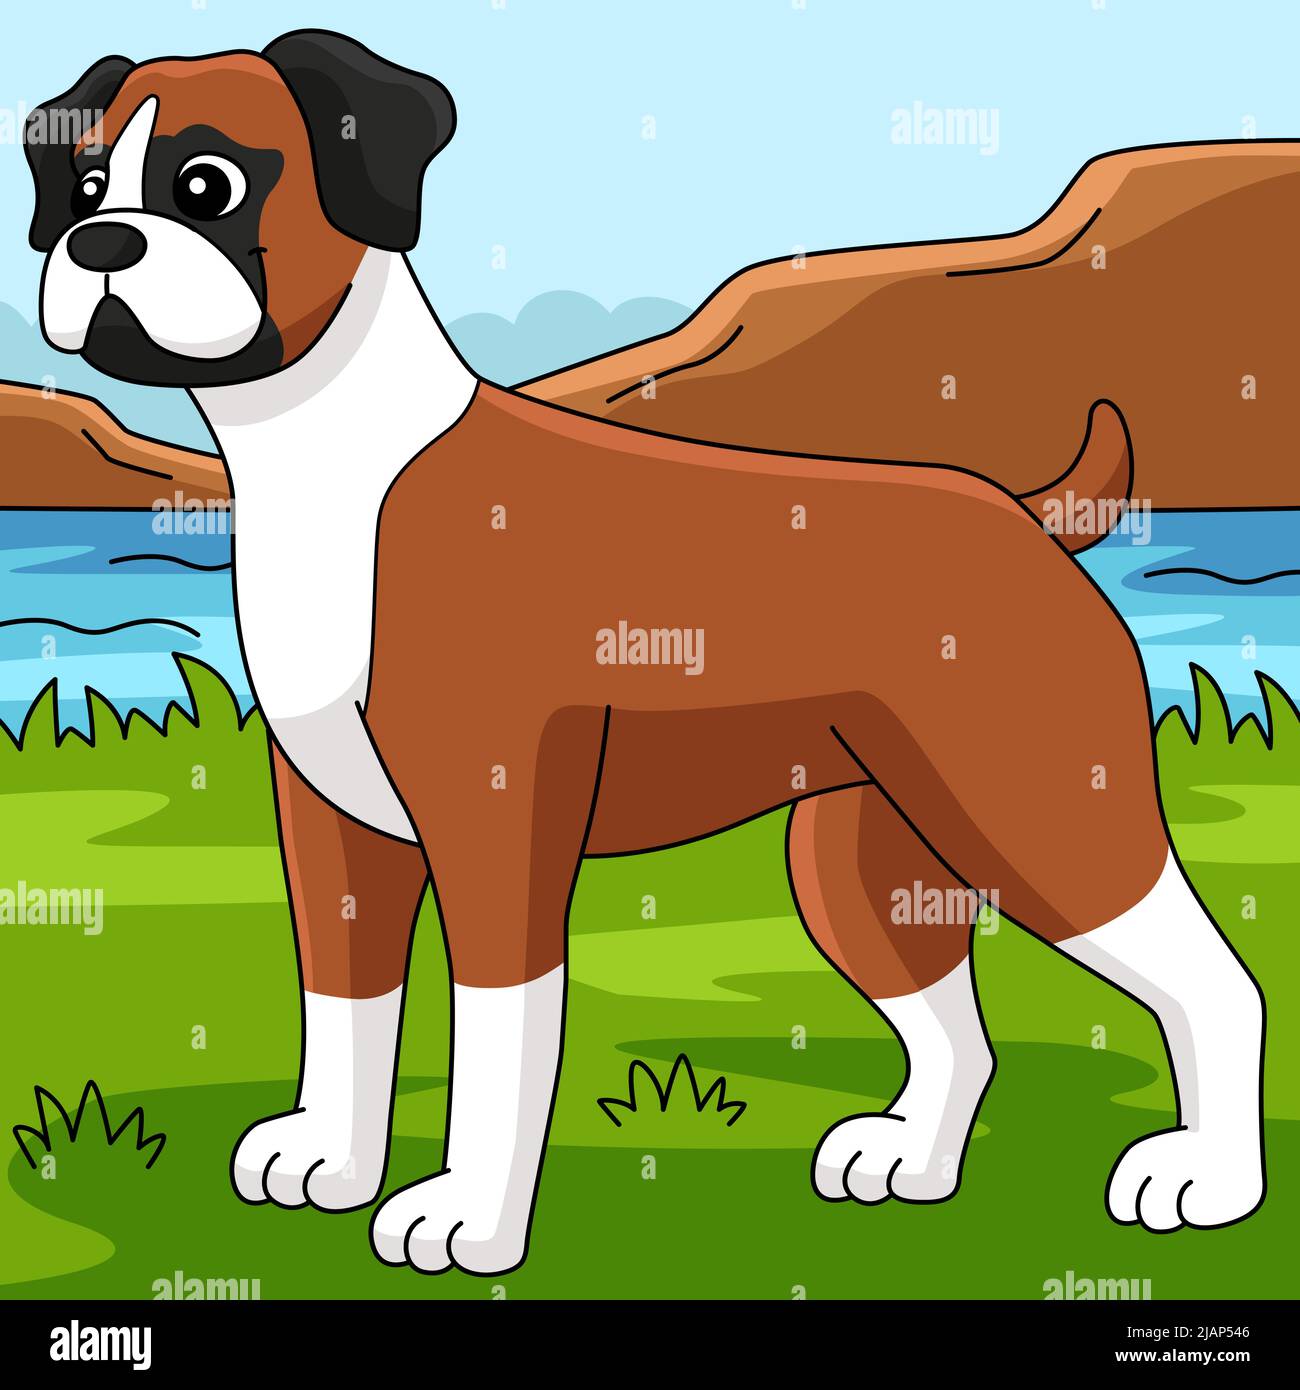 Boxer dog breed Immagini Vettoriali Stock - Pagina 2 - Alamy